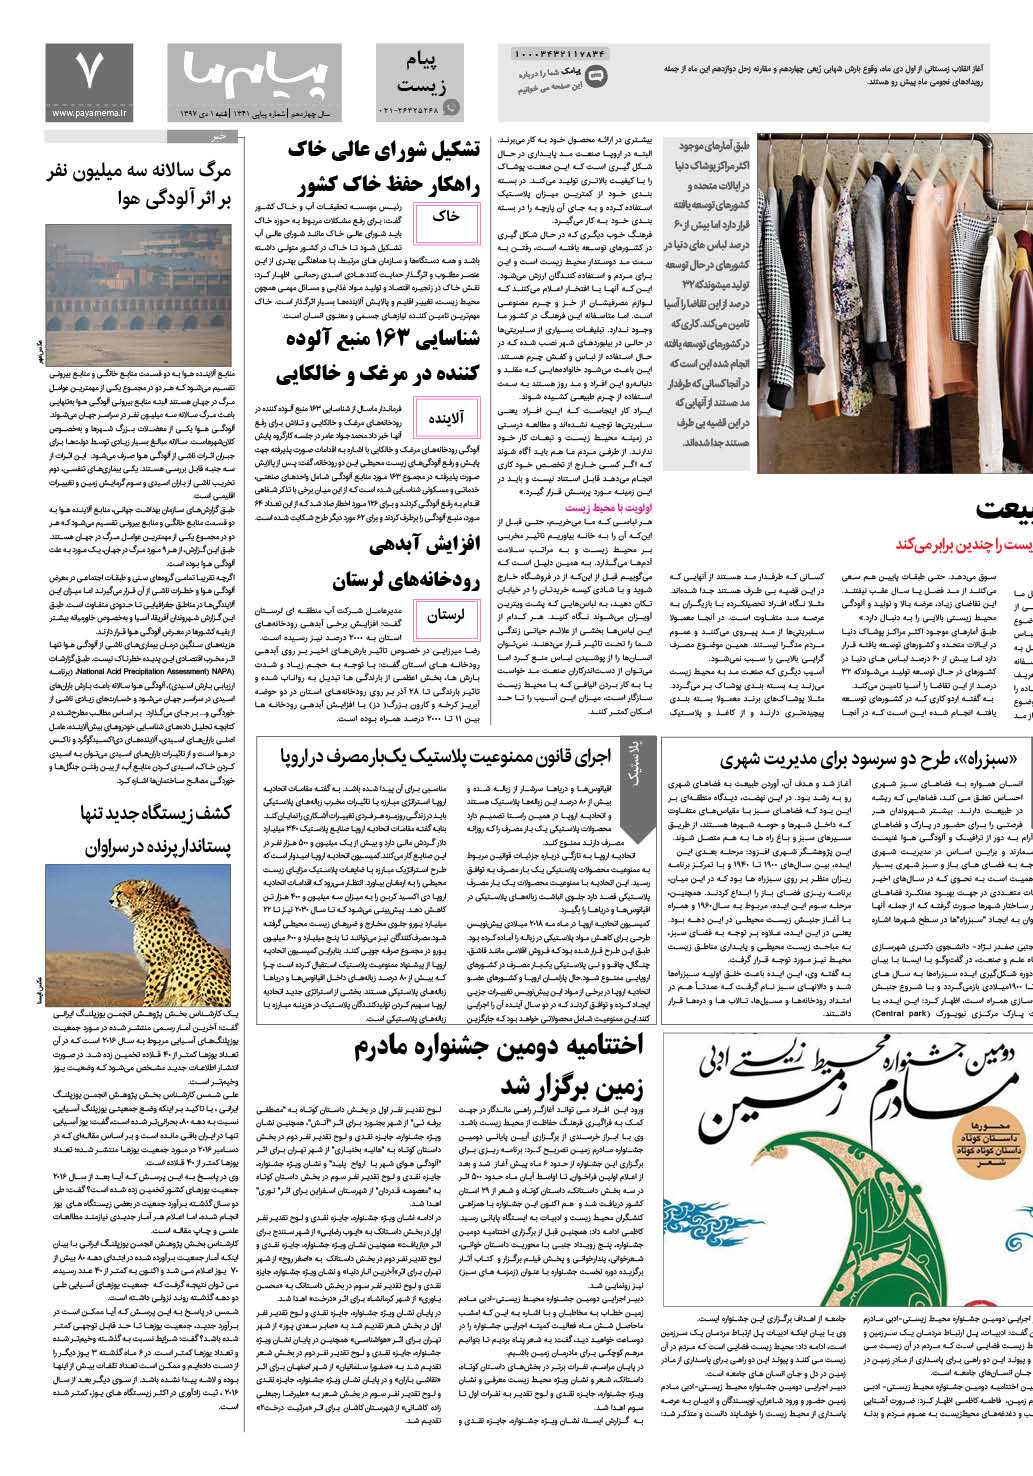 صفحه پیام زیست شماره 1341 روزنامه پیام ما